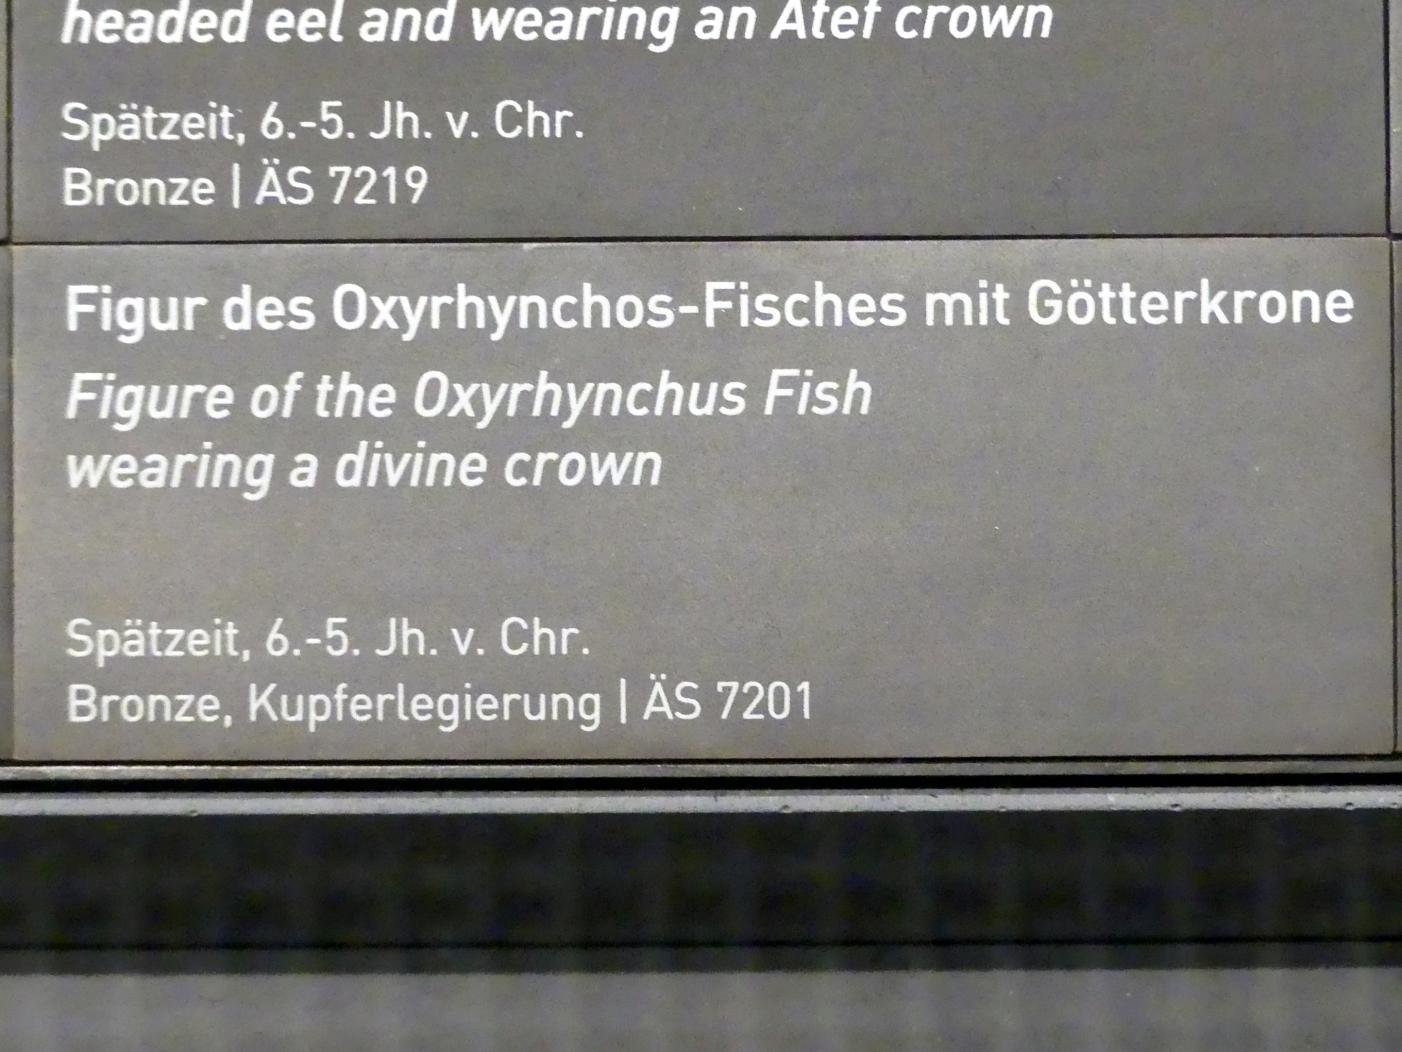 Figur des Oxyrhynchos-Fisches mit Götterkrone, Spätzeit, 360 - 342 v. Chr., 600 - 400 v. Chr., Bild 4/4